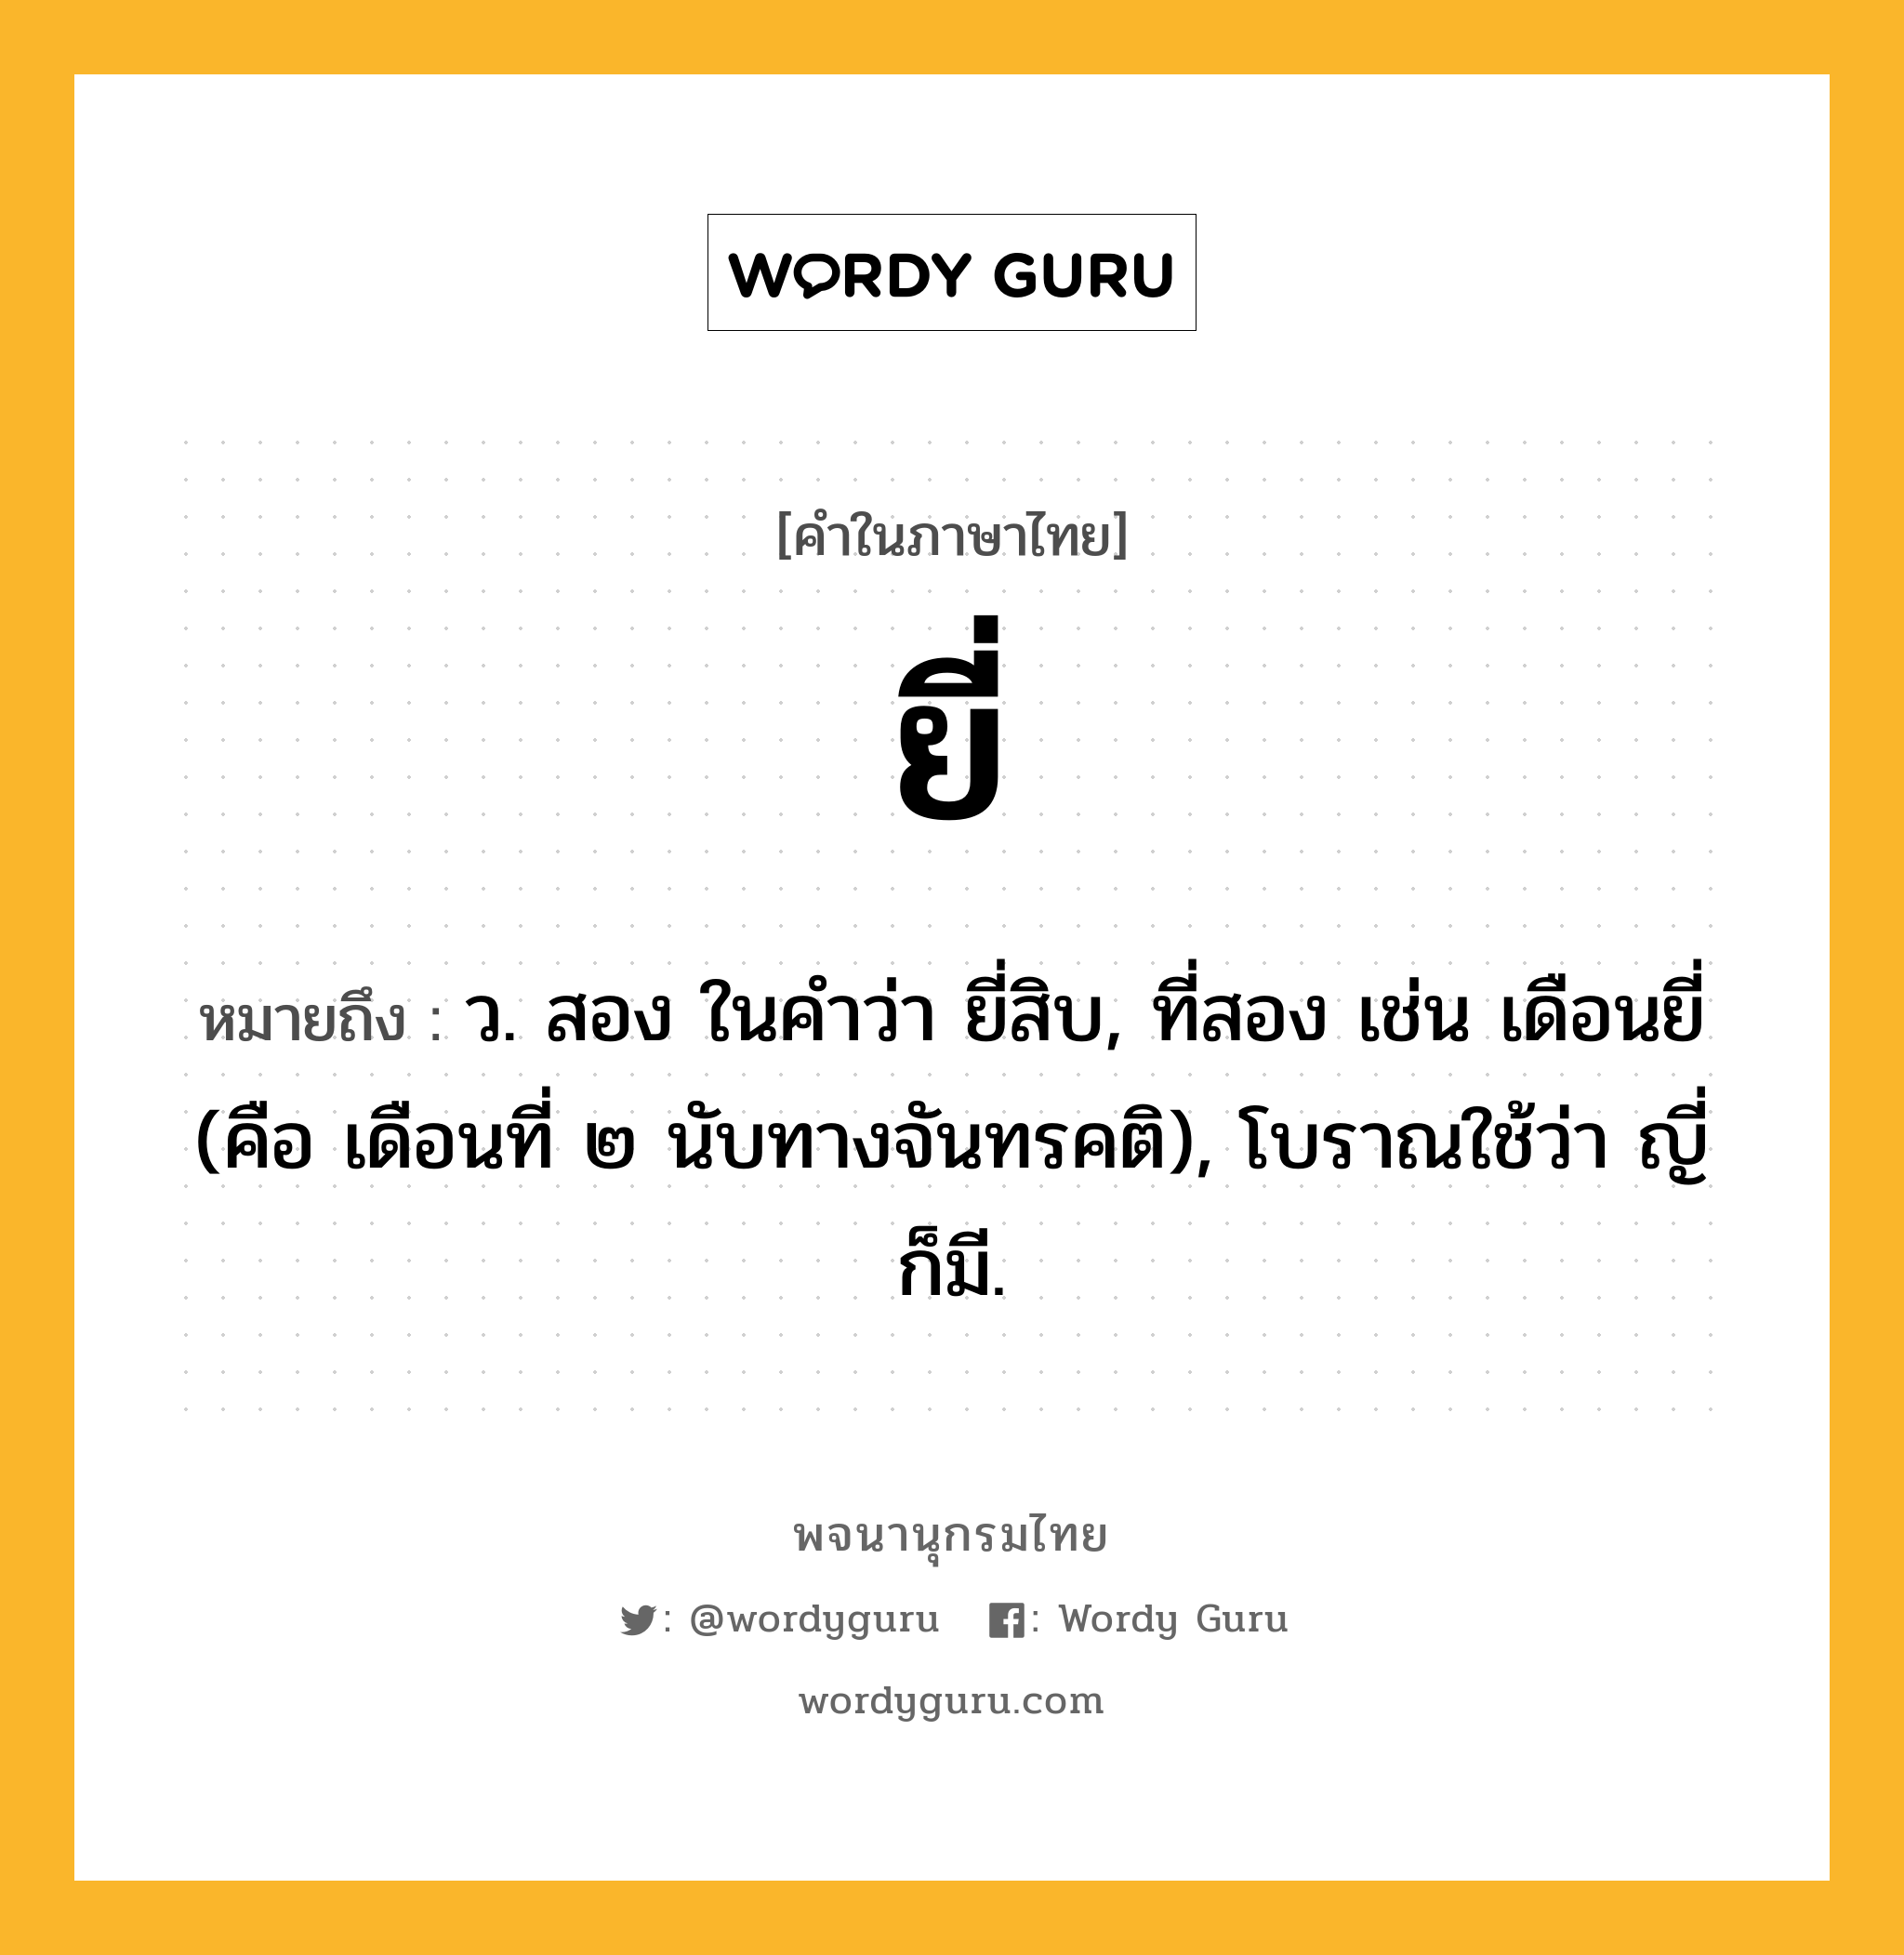 ยี่ ความหมาย หมายถึงอะไร?, คำในภาษาไทย ยี่ หมายถึง ว. สอง ในคำว่า ยี่สิบ, ที่สอง เช่น เดือนยี่ (คือ เดือนที่ ๒ นับทางจันทรคติ), โบราณใช้ว่า ญี่ ก็มี.